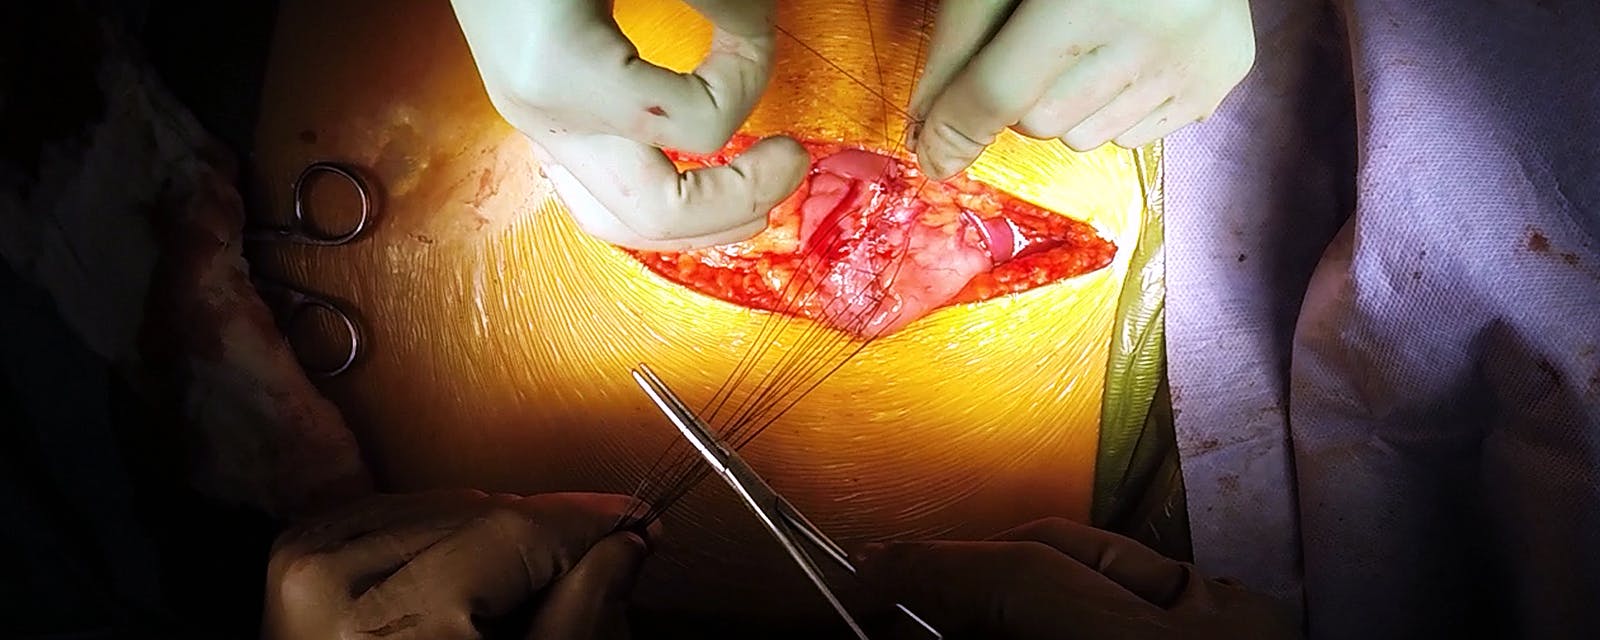 open-antrectomy-gastrojejunostomy-multiple-endocrine-neoplasia-tumor